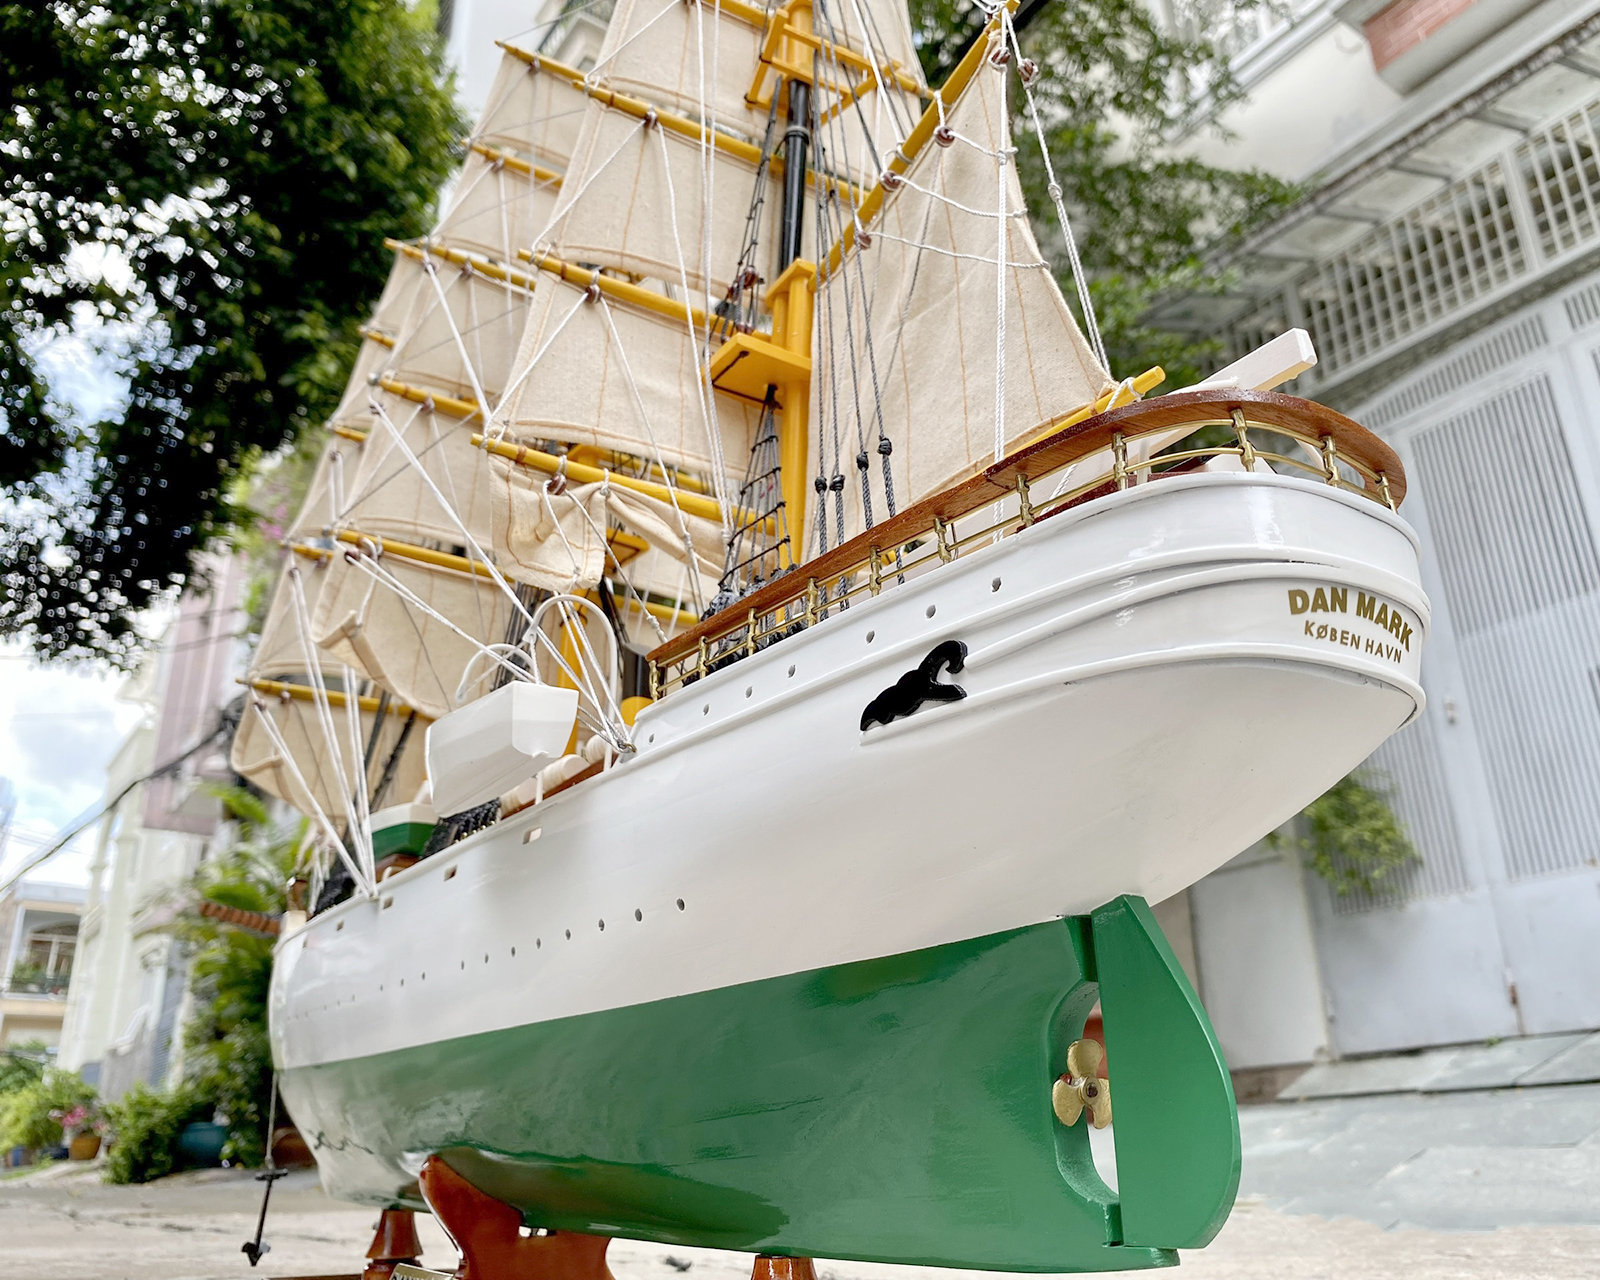 Thuyền buồm gỗ trang trí Danmark dài 100cm lắp ráp sẵn, mô hình con tàu gỗ trưng bày phòng khách hàng xuất khẩu